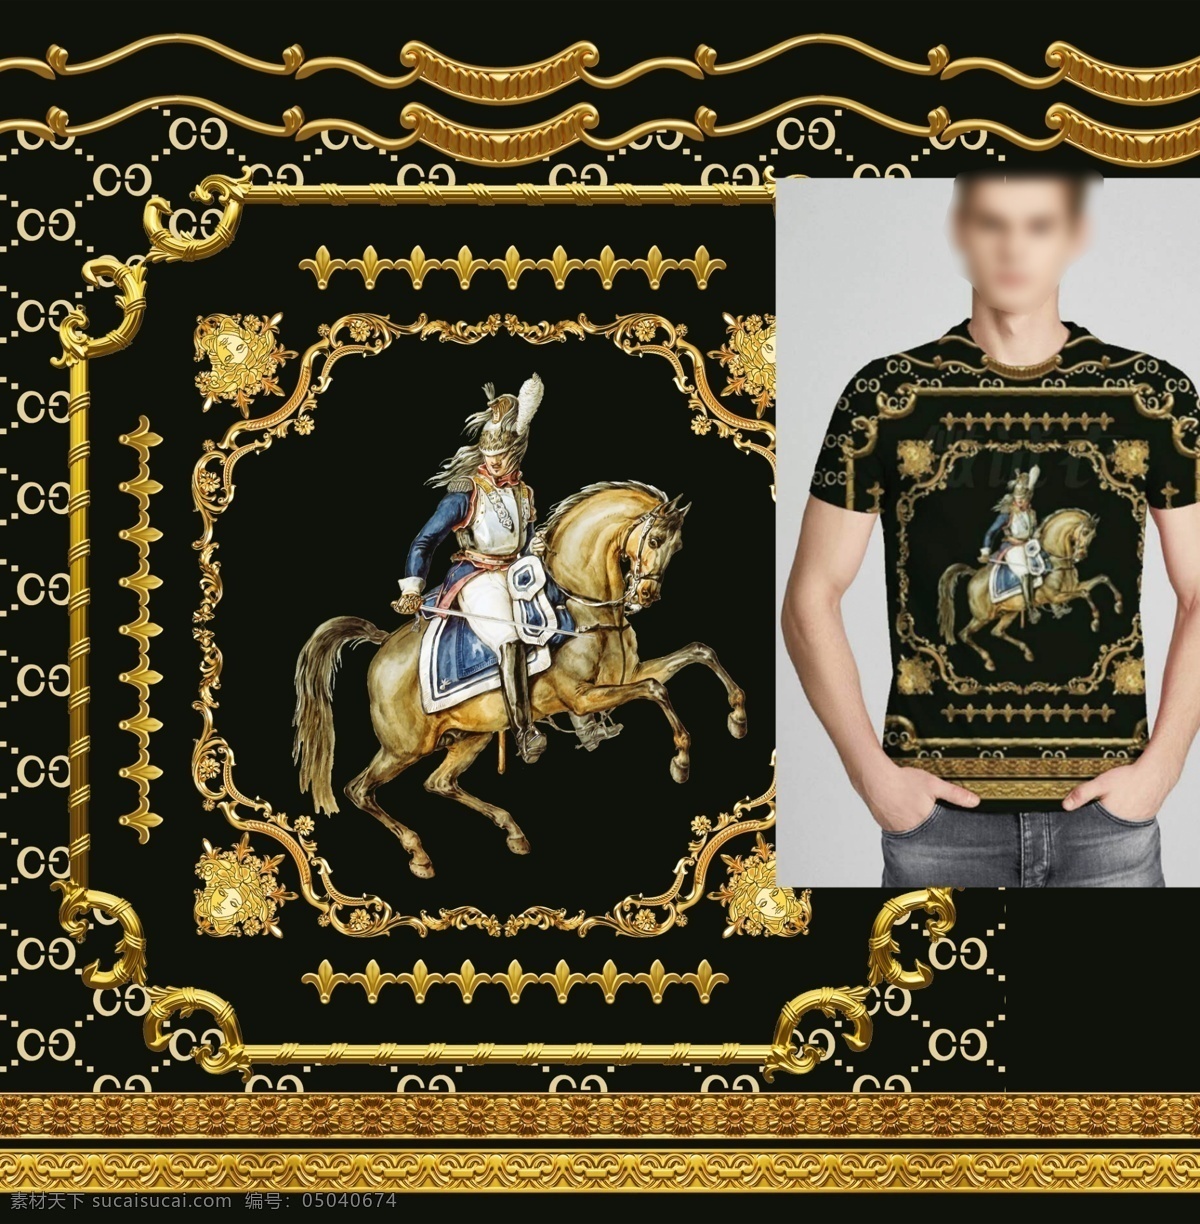 大牌男装图片 金色花边 拿破仑战马 数码印花定位 潮牌男装 时尚元素 高清图案 人物图库